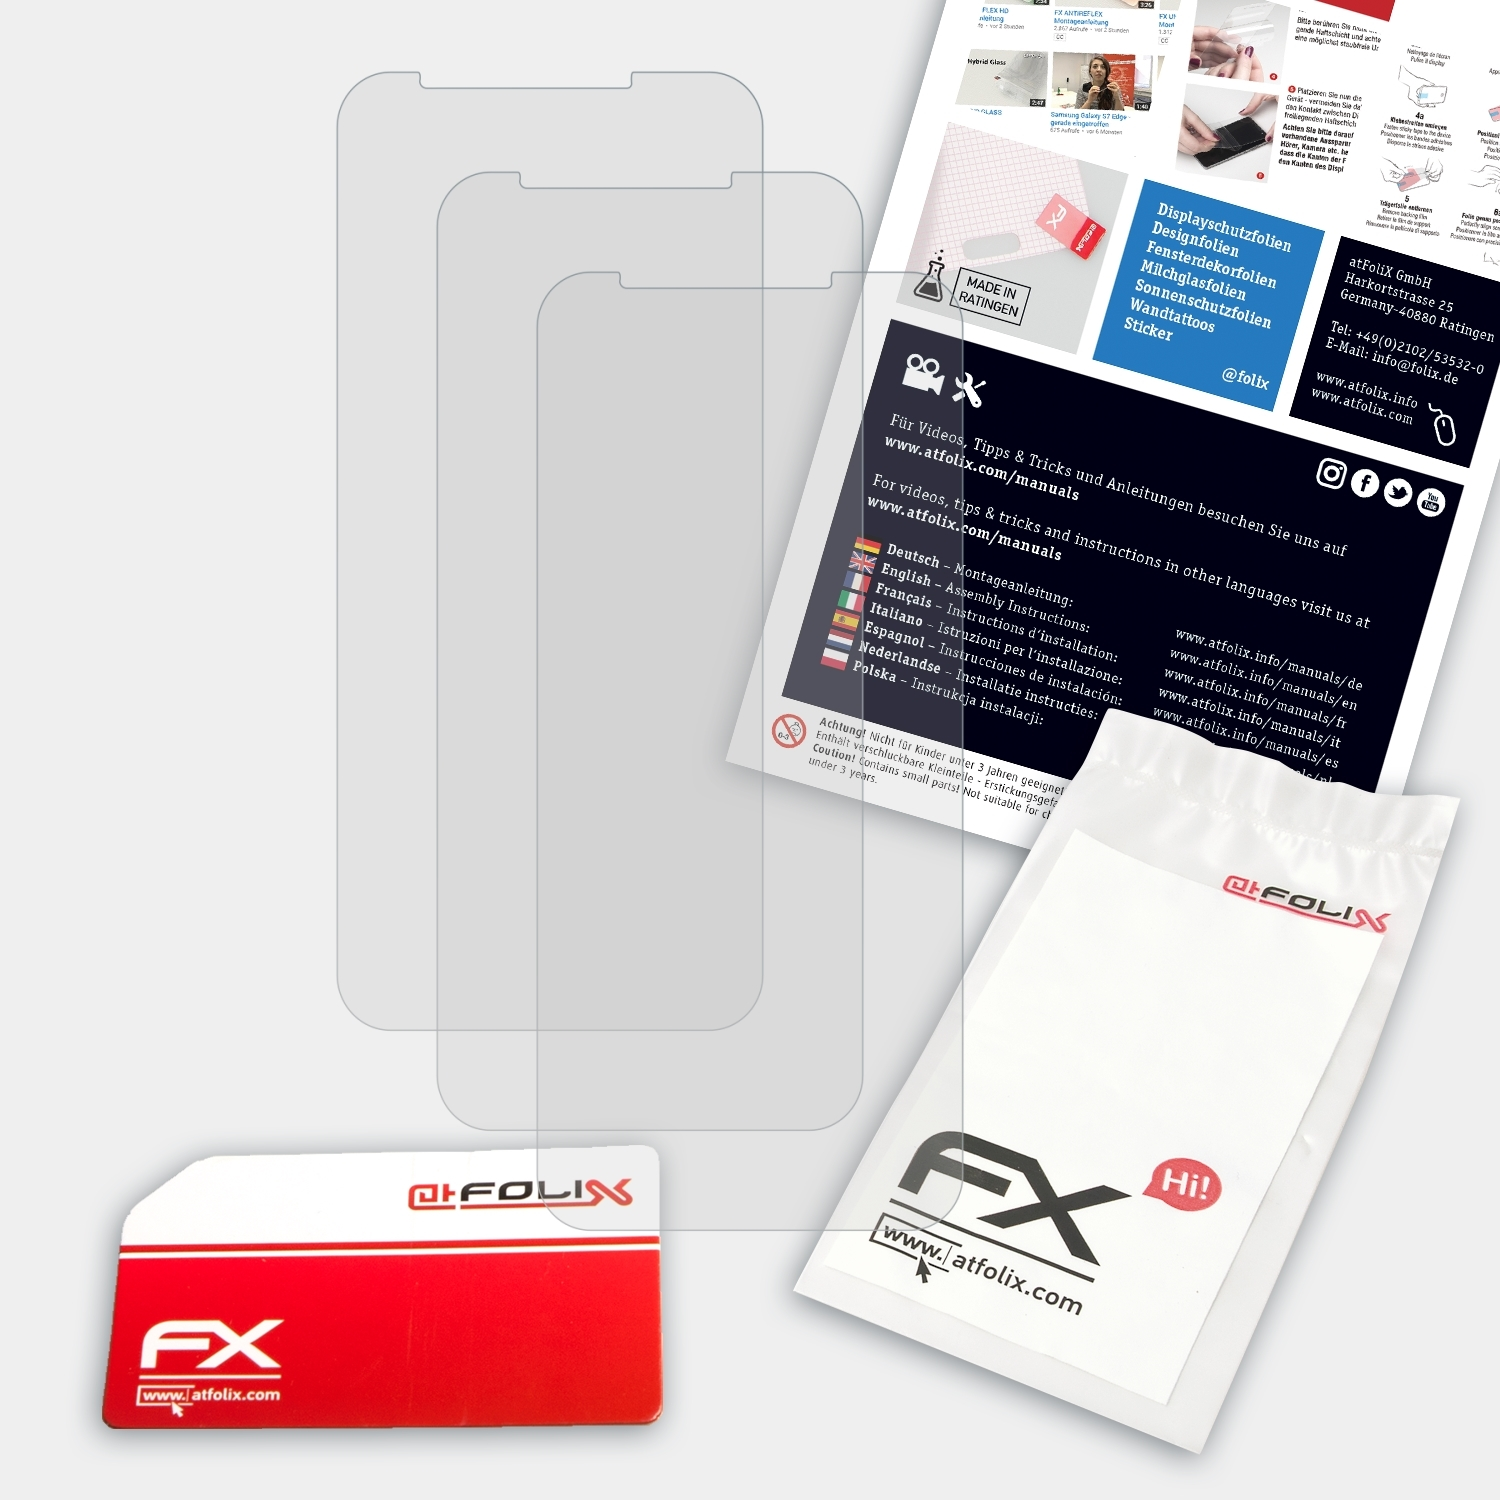 ATFOLIX 3x FX-Antireflex Displayschutz(für Nuu G2) Mobile